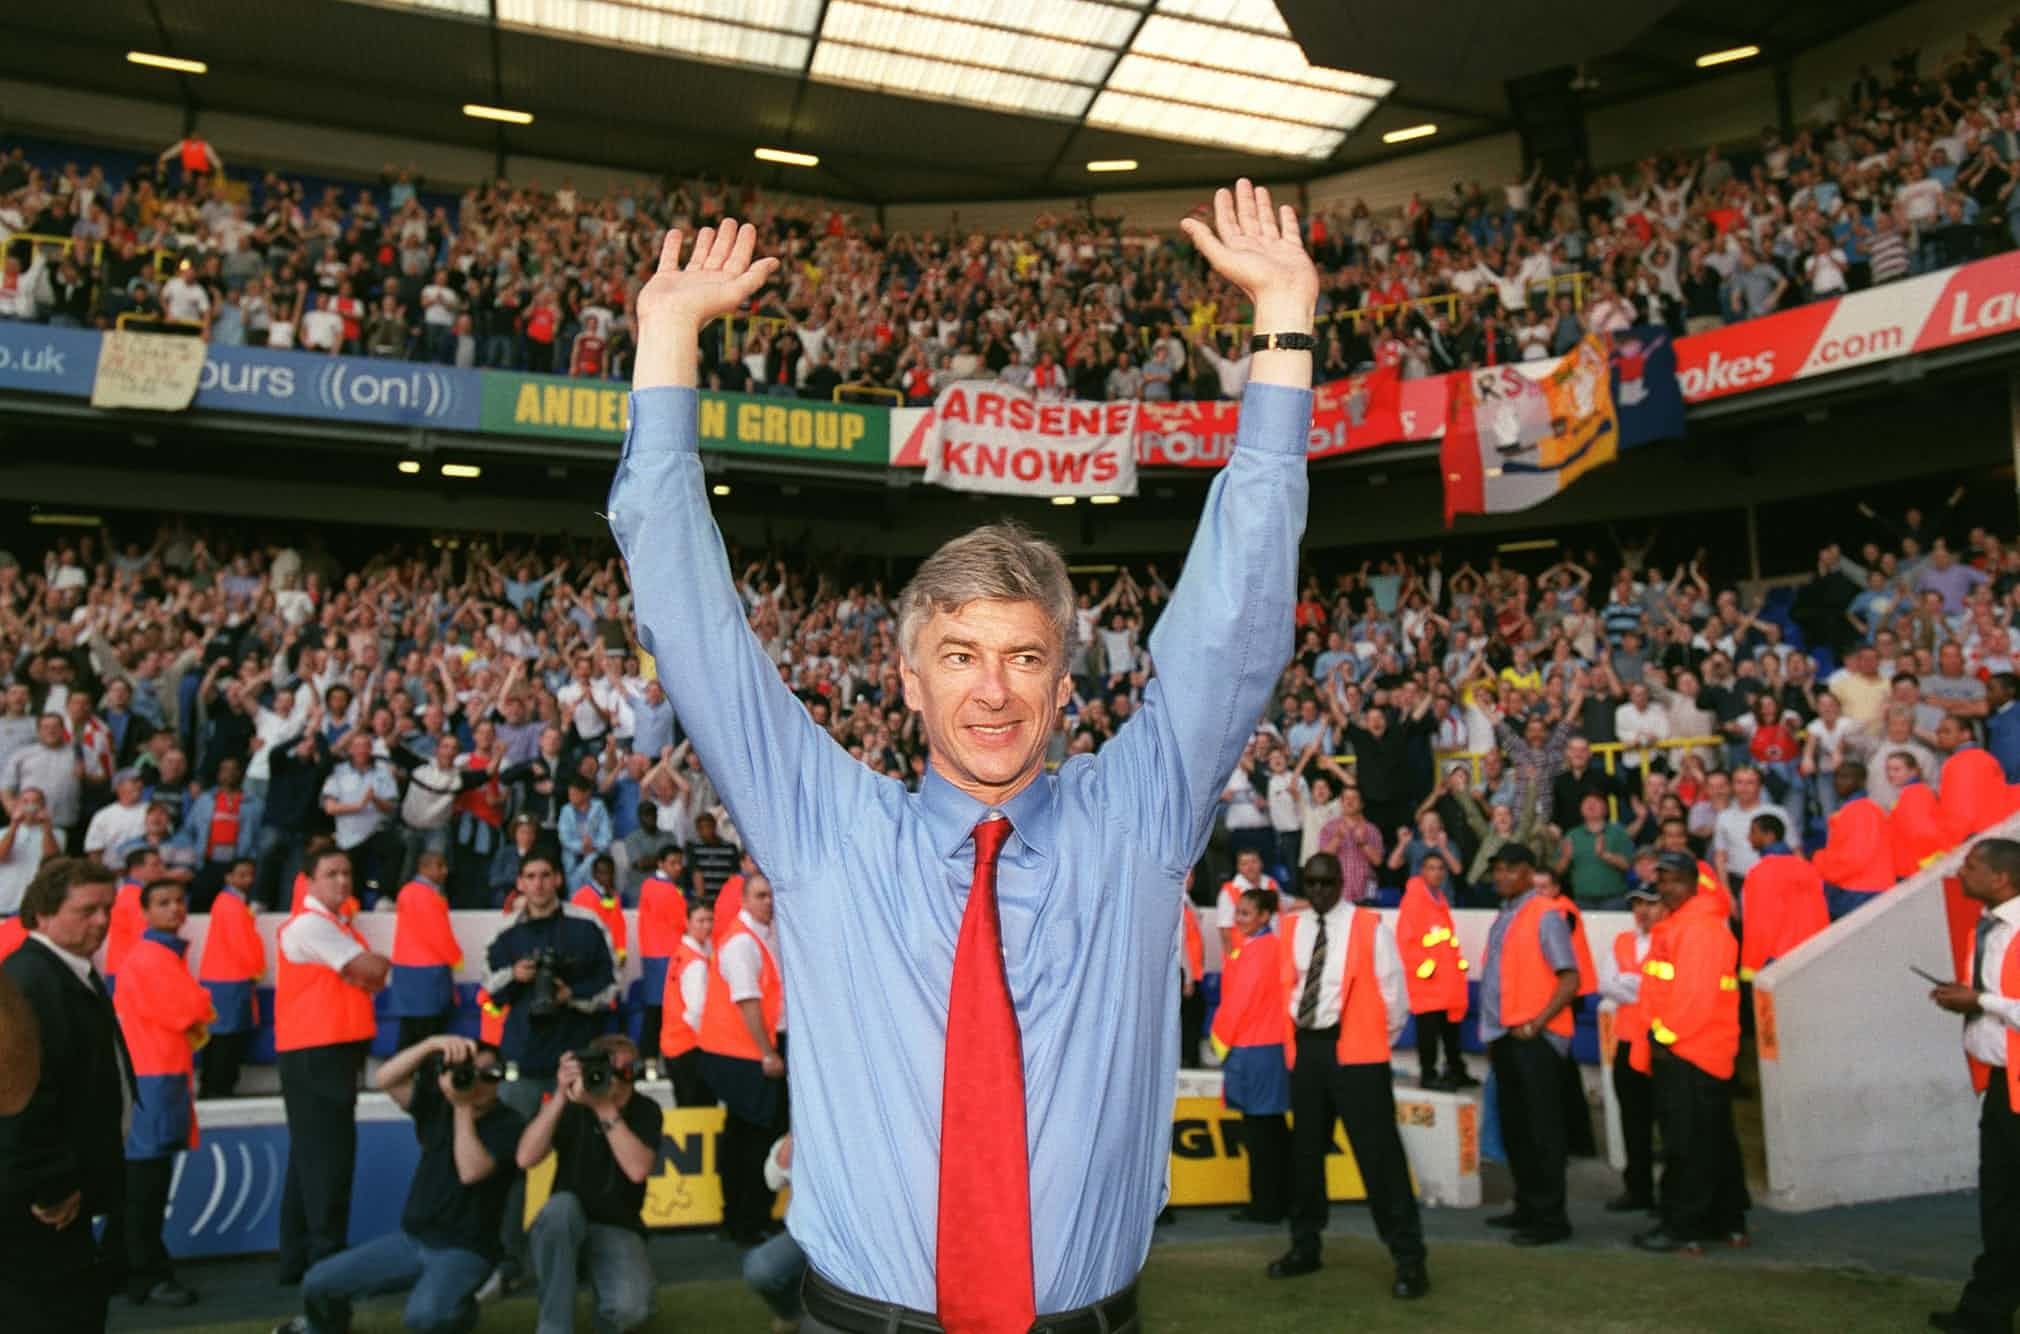 Wenger rời Arsenal sau 22 năm: Chỉ có thể là yêu...